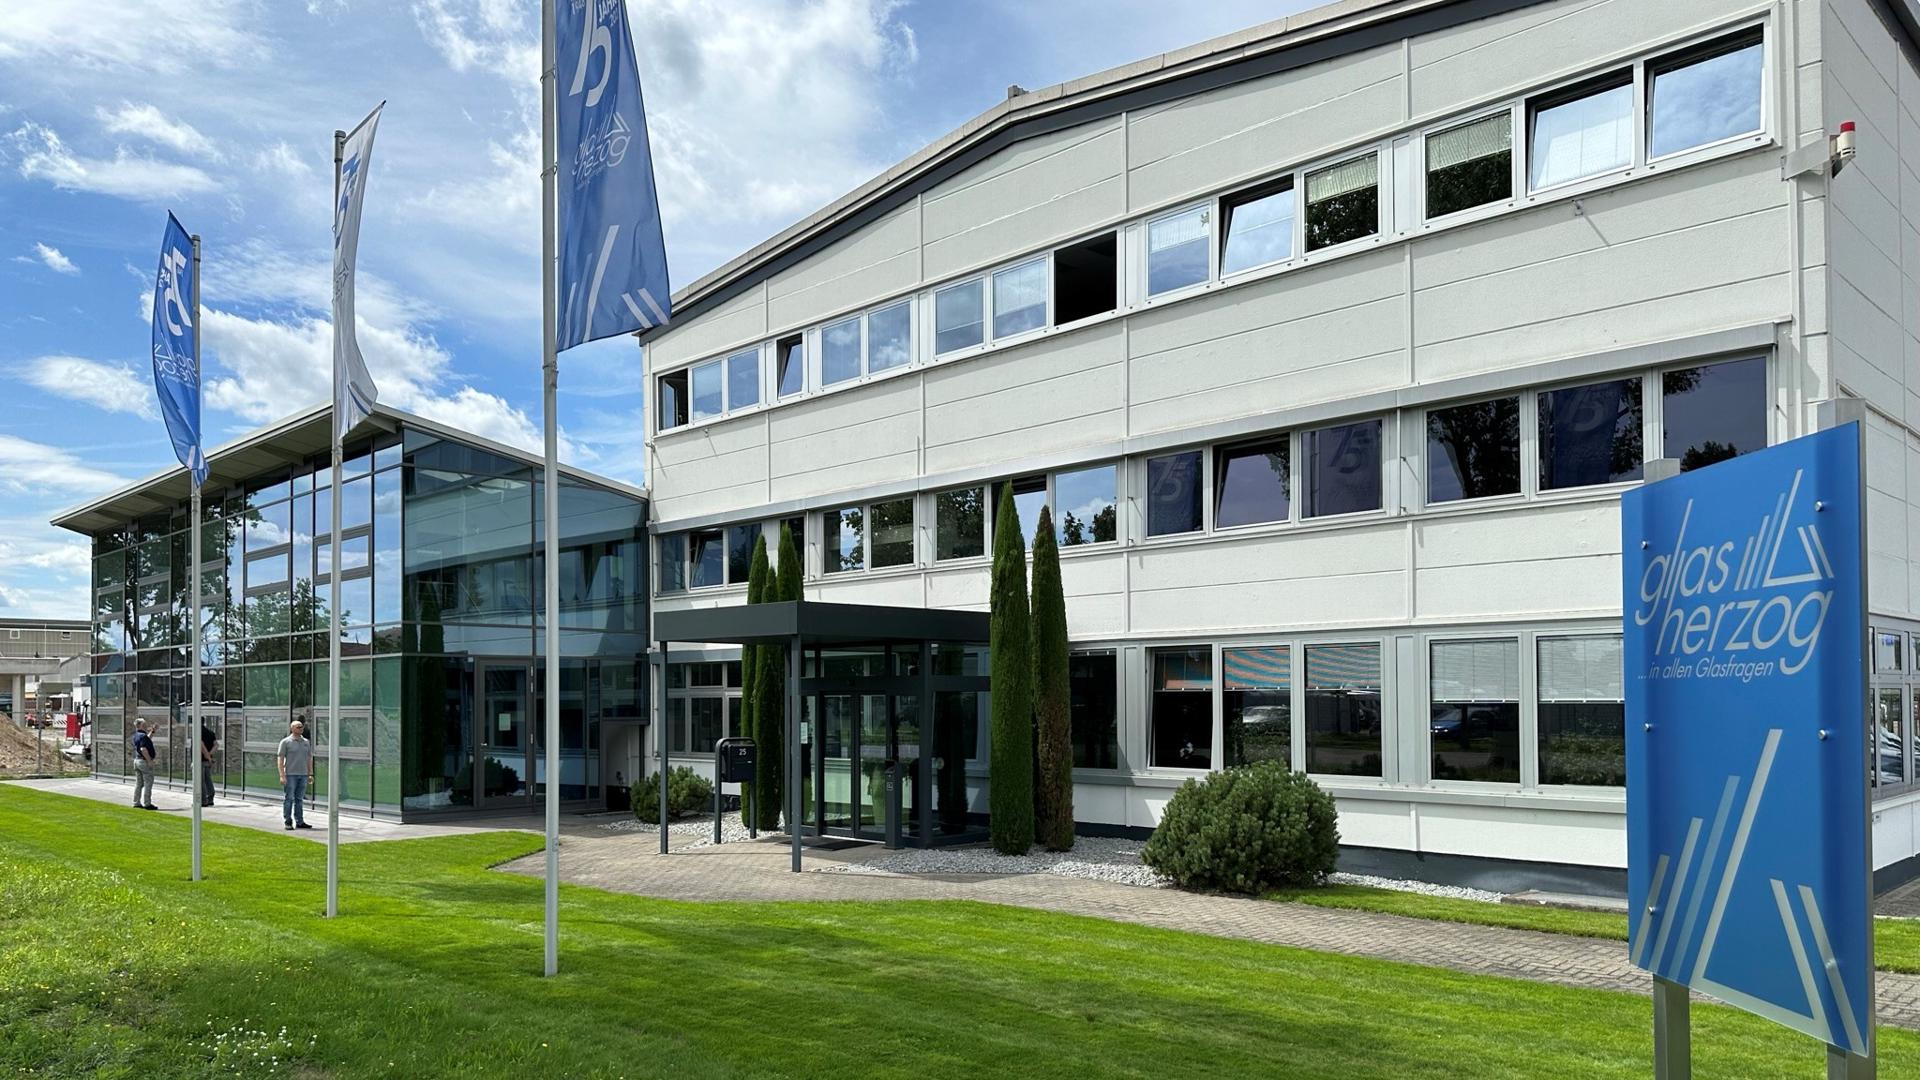 Die Firma Glas Herzog in Waghäusel hat sich in ihrer 75-jährigen Firmengeschichte zu einem der bedeutendsten Unternehmen für die Herstellung von Isolierglas entwickelt.